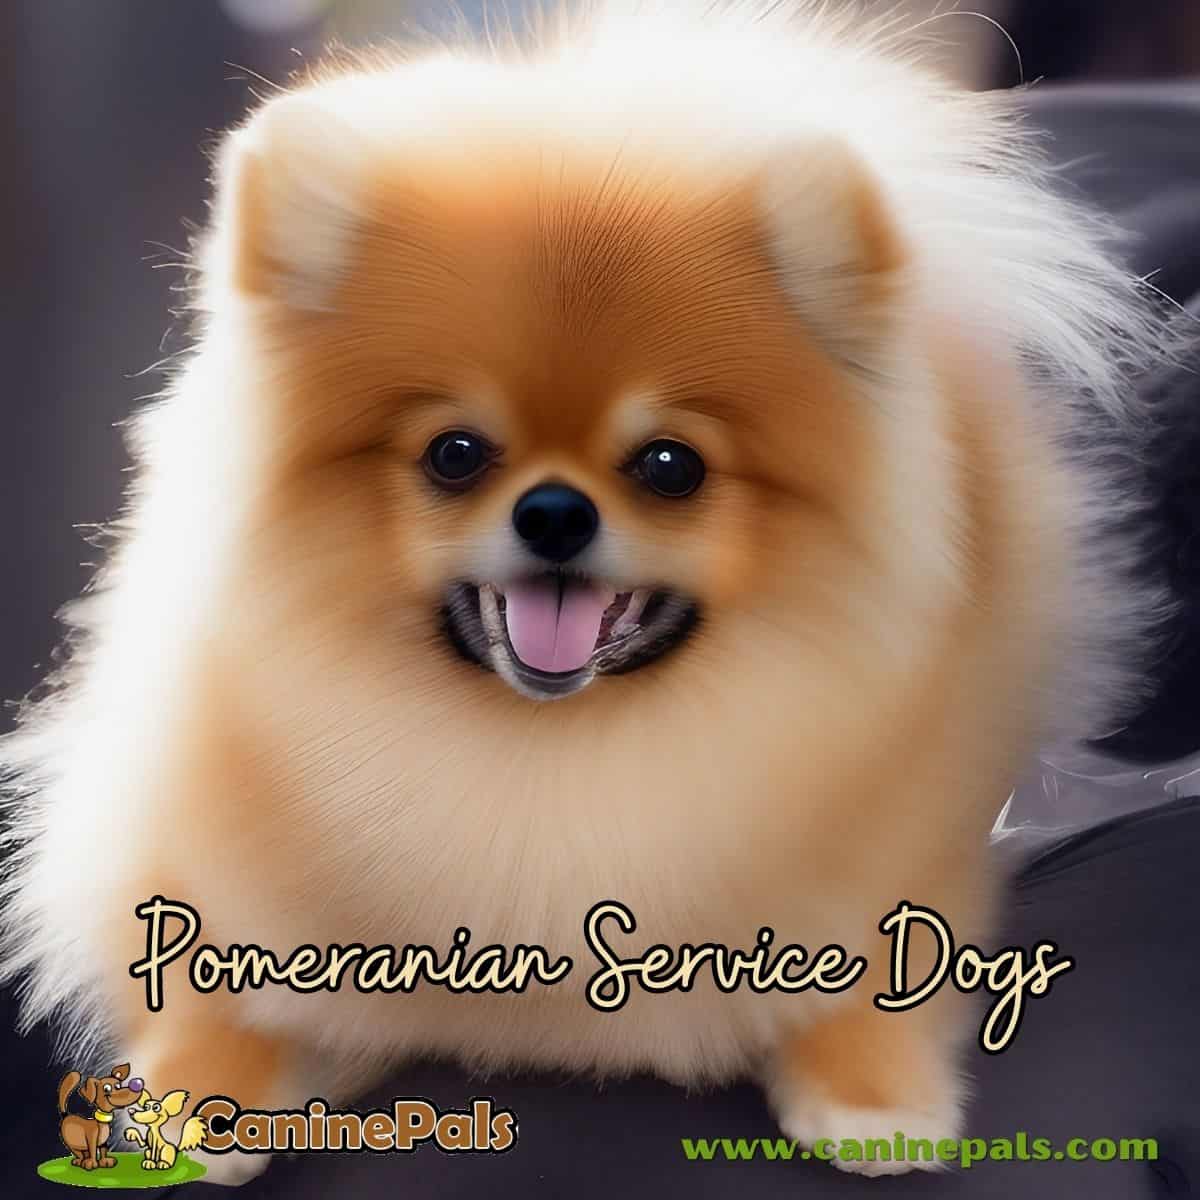 Pomeranian Service Dogs